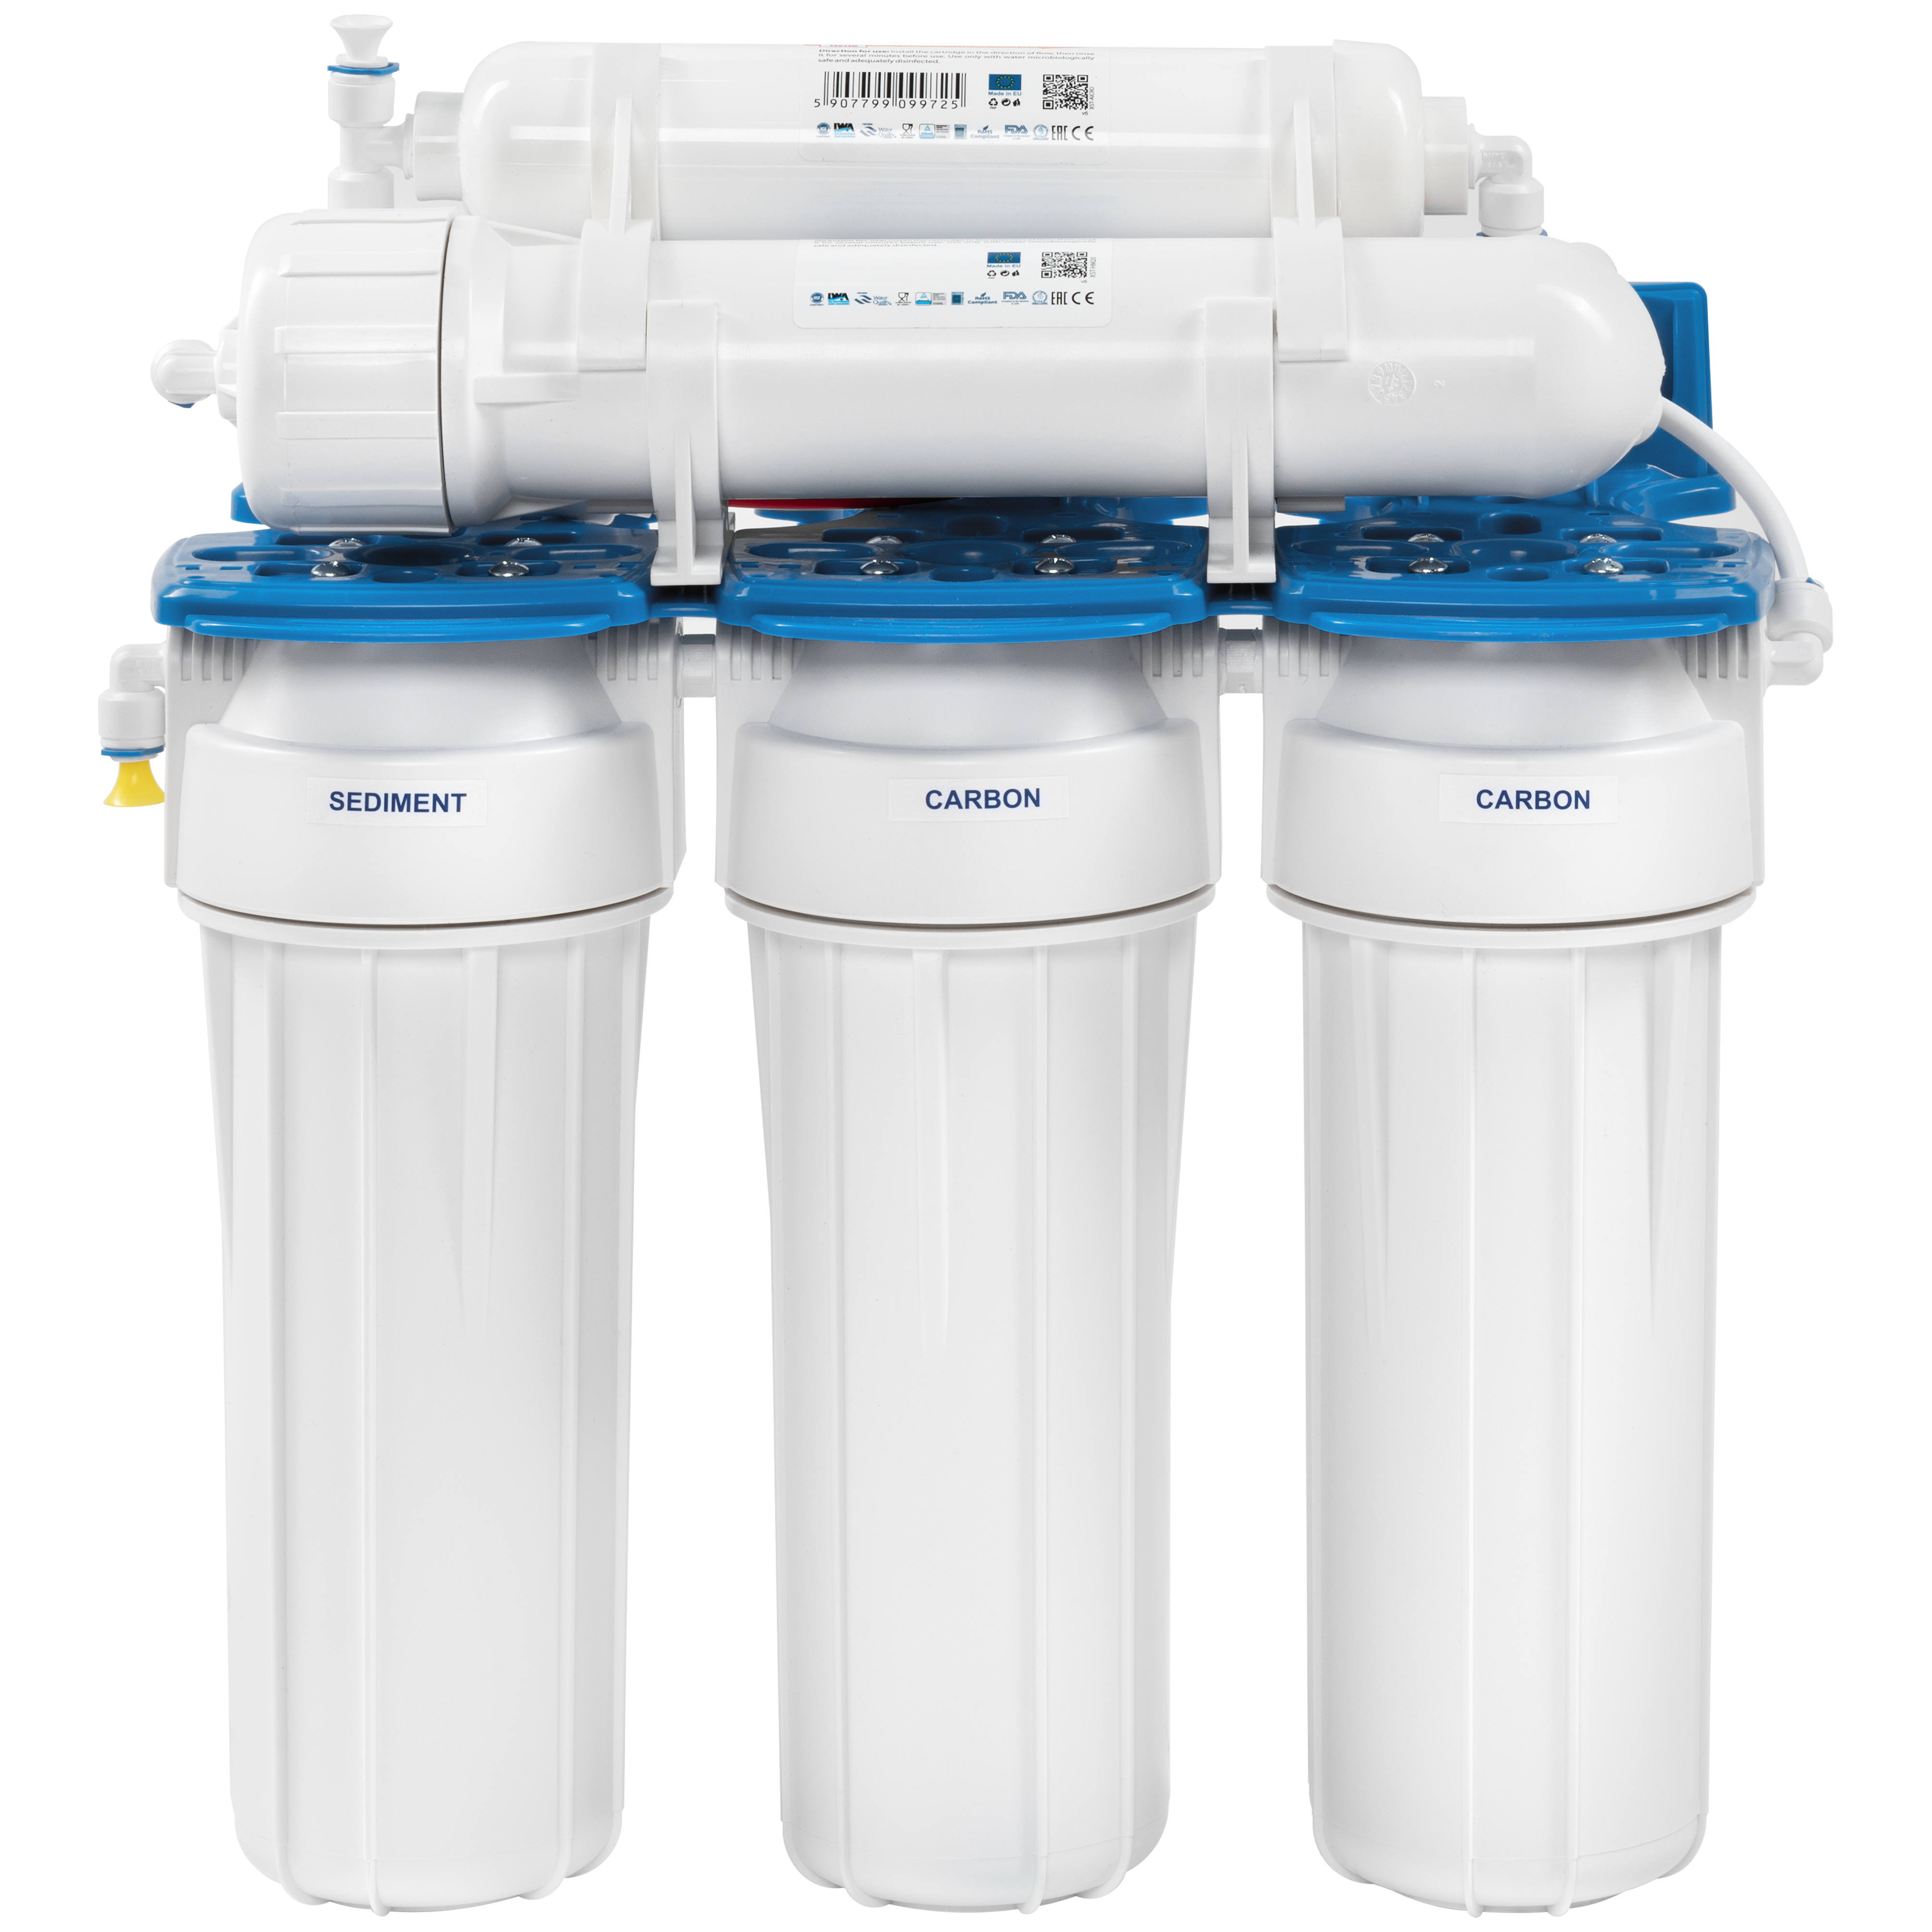 Фильтр для очистки воды в аквариуме Aquafilter RX55145516